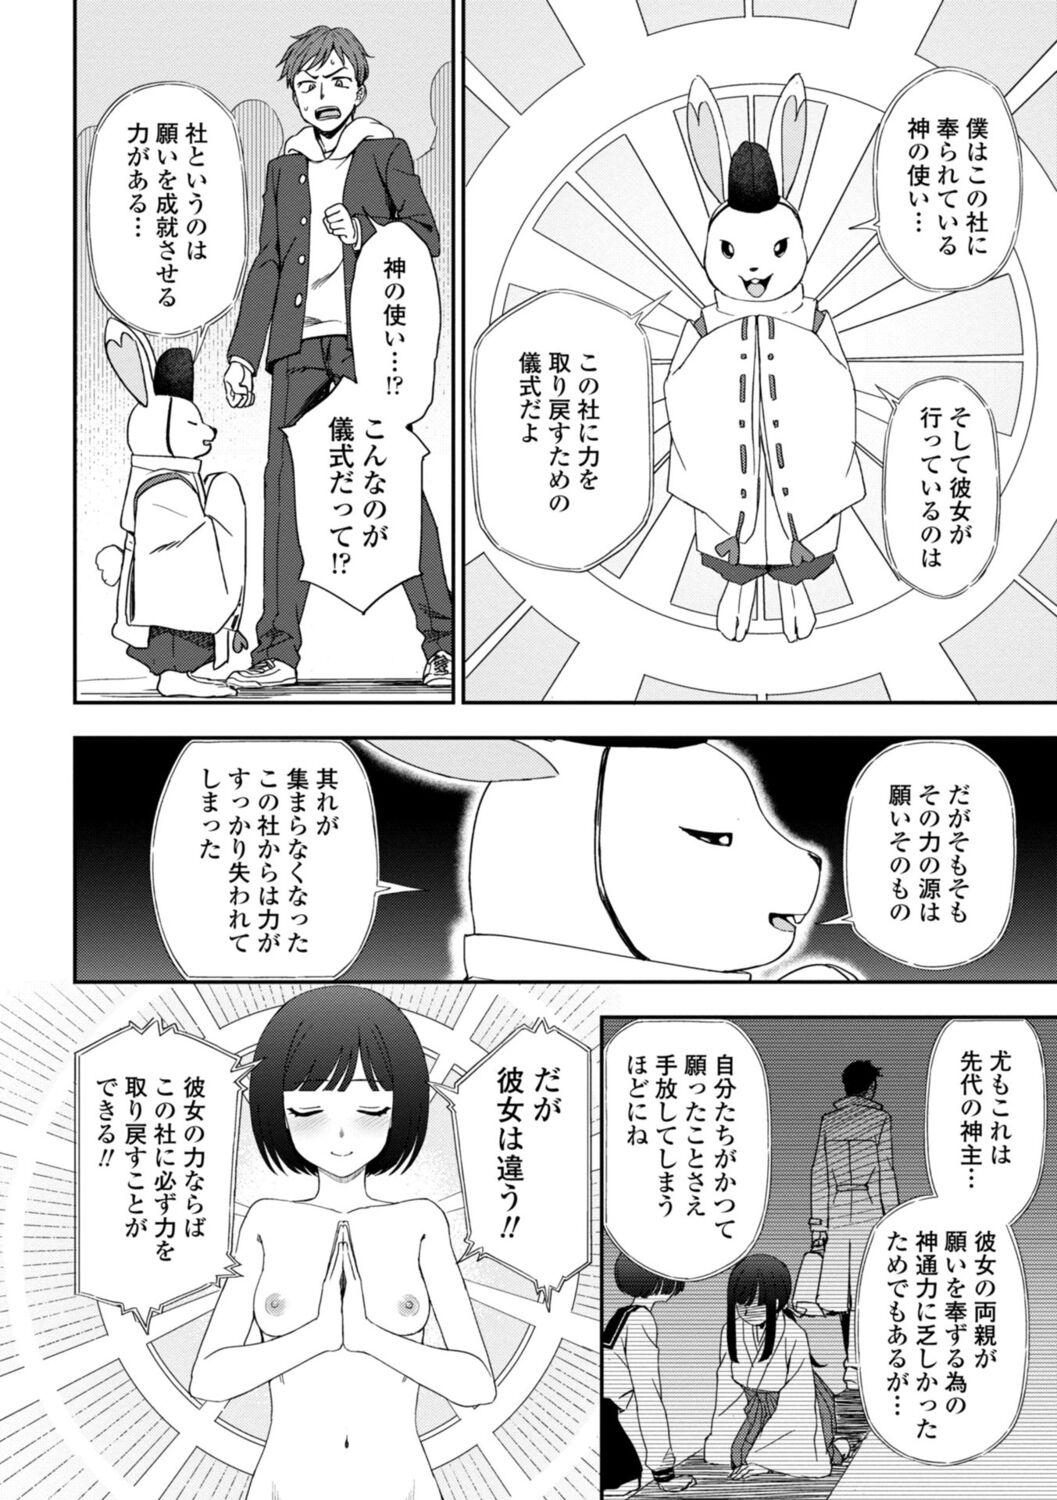 Girl On Girl Watashi no Subete Sasagemasu - I'll give you all of mine. Desnuda - Page 10